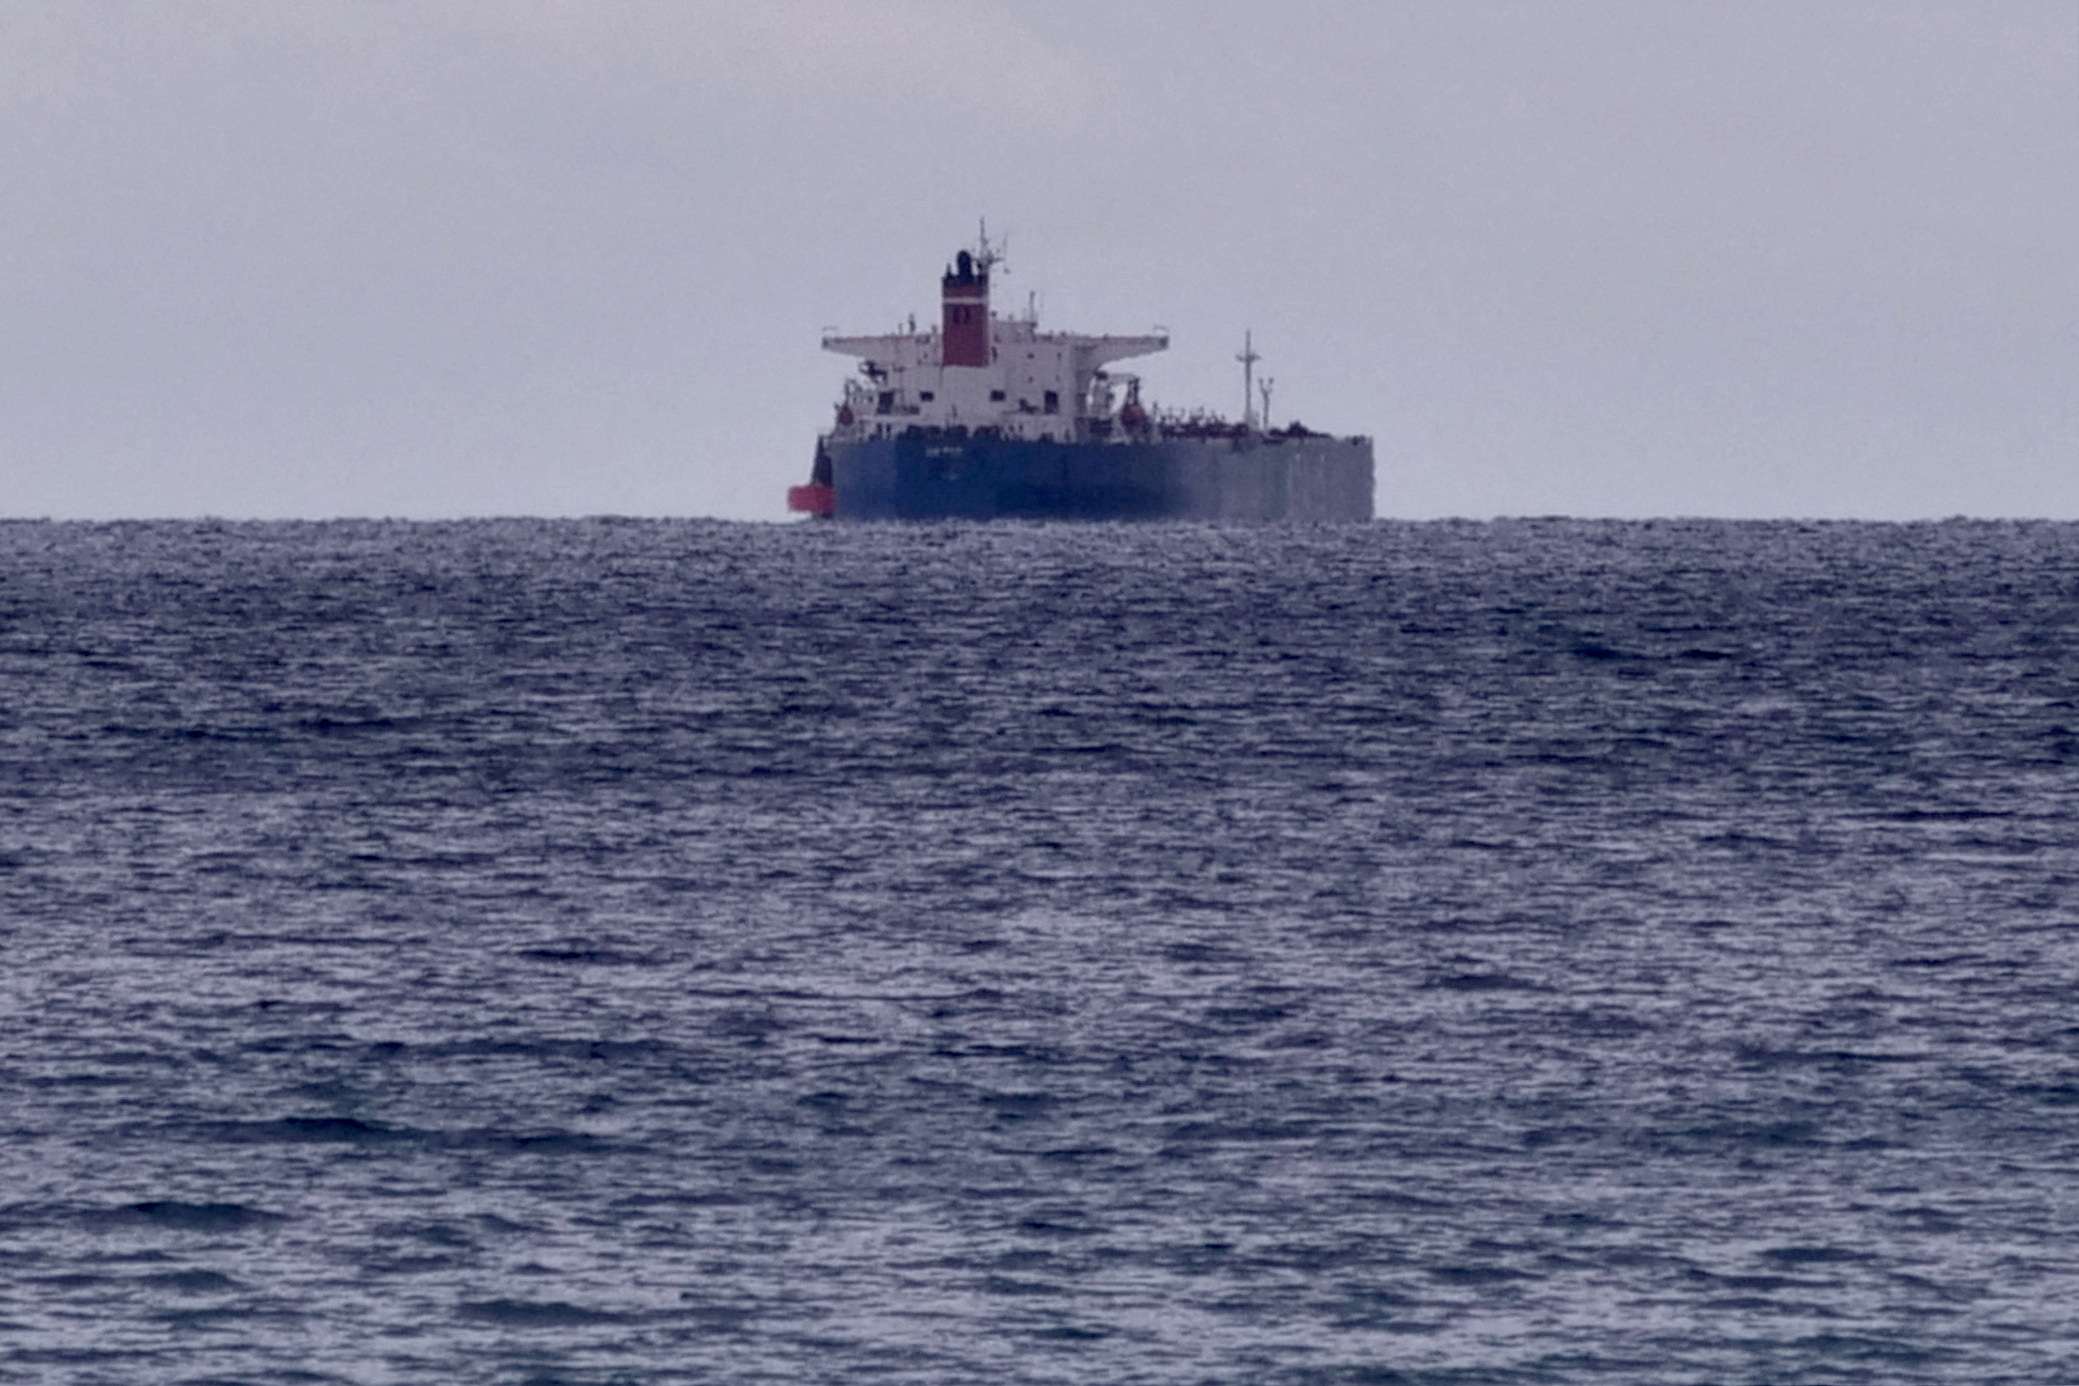 Υεμένη: Ελεύθερο το δεξαμενόπλοιο που καταλήφθηκε από ενόπλους – Αμερικανικό πλοίο έσπευσε σε βοήθεια και έπιασε τους 5